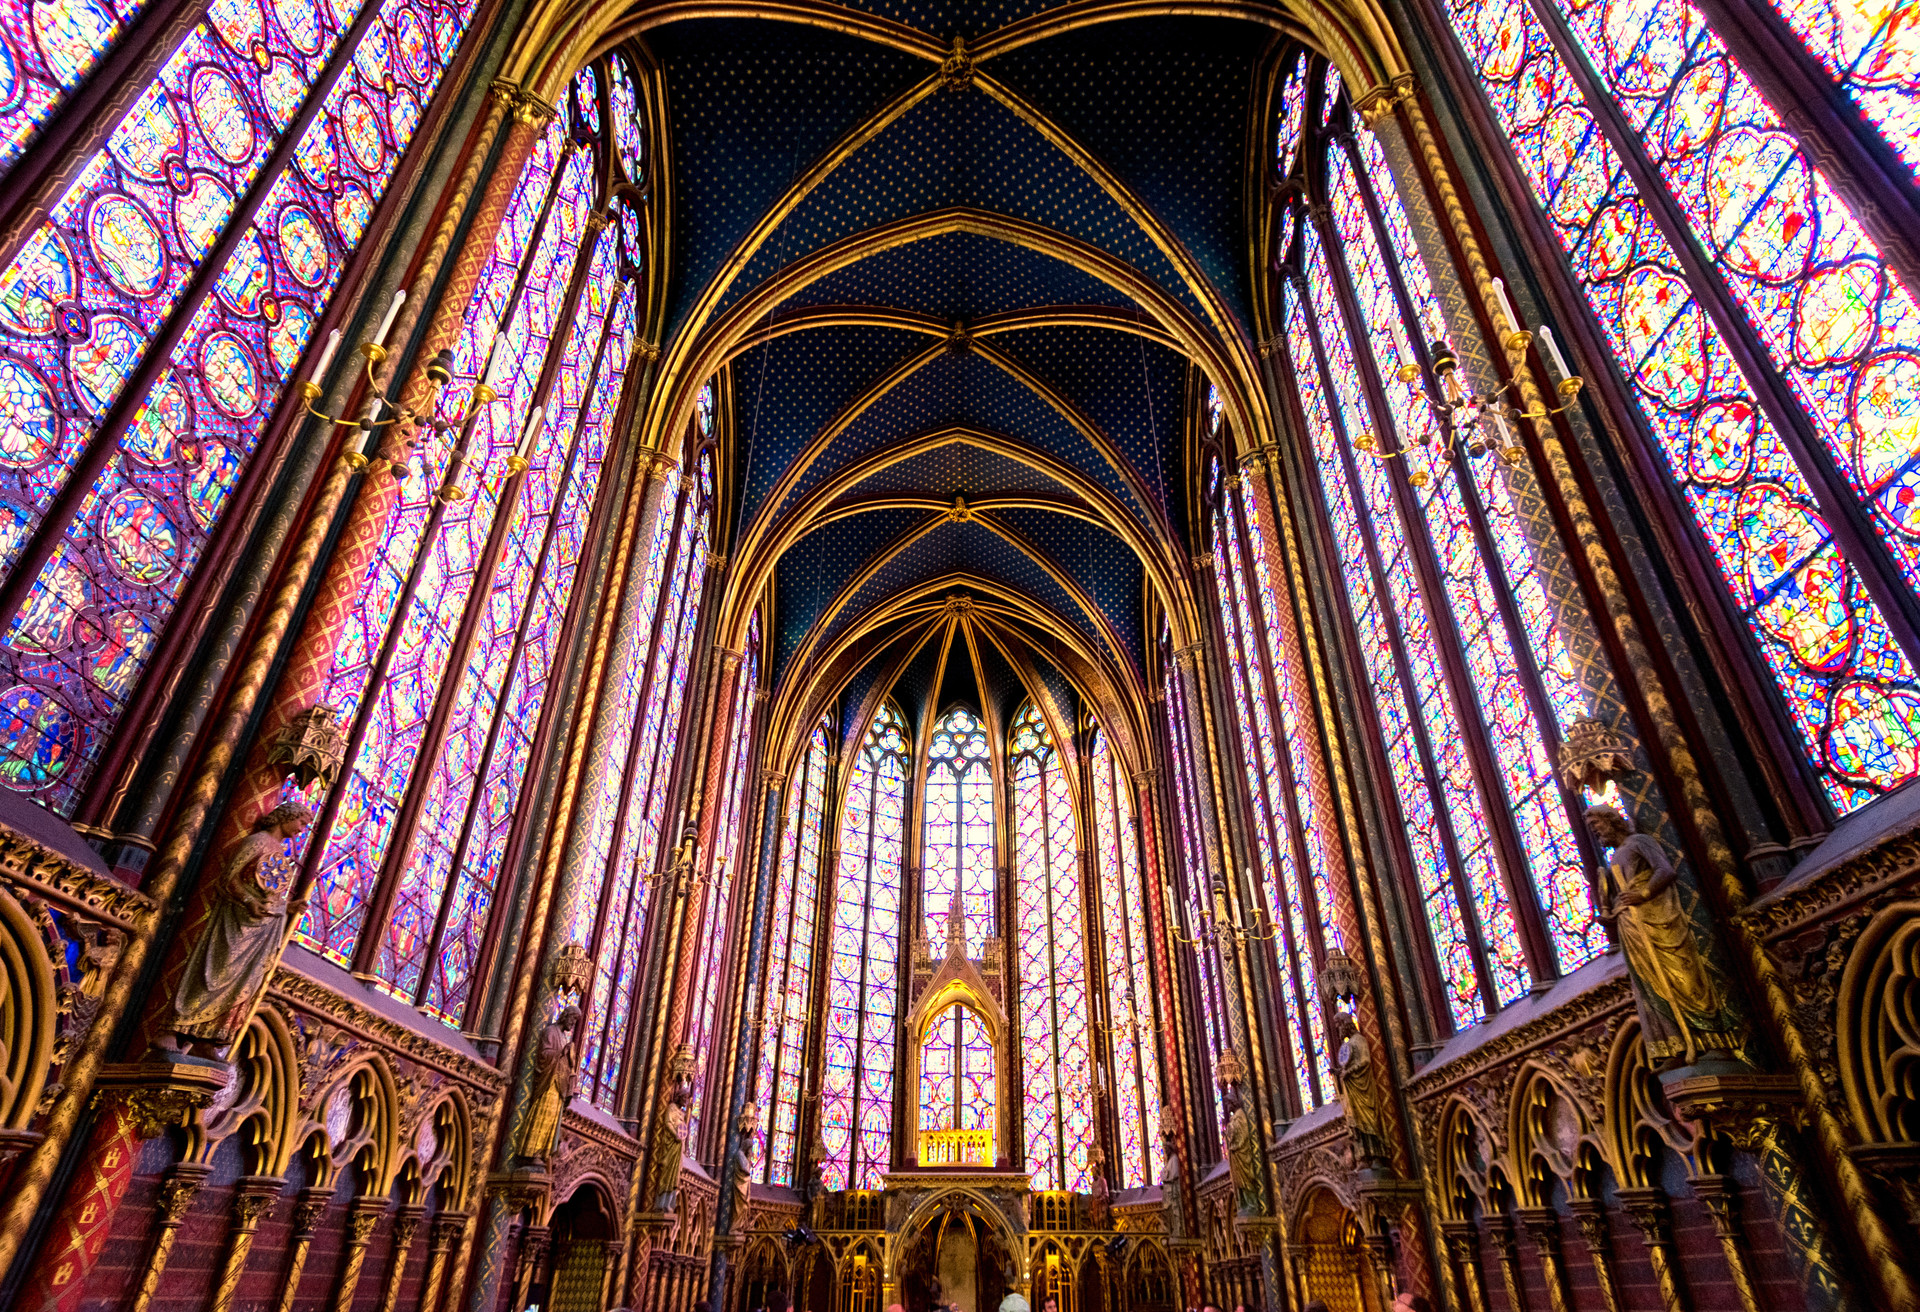 Unikalne szklane mozaiki i witraże w Sainte-Chapelle przedstawiają ponad tysiąc scen z Biblii